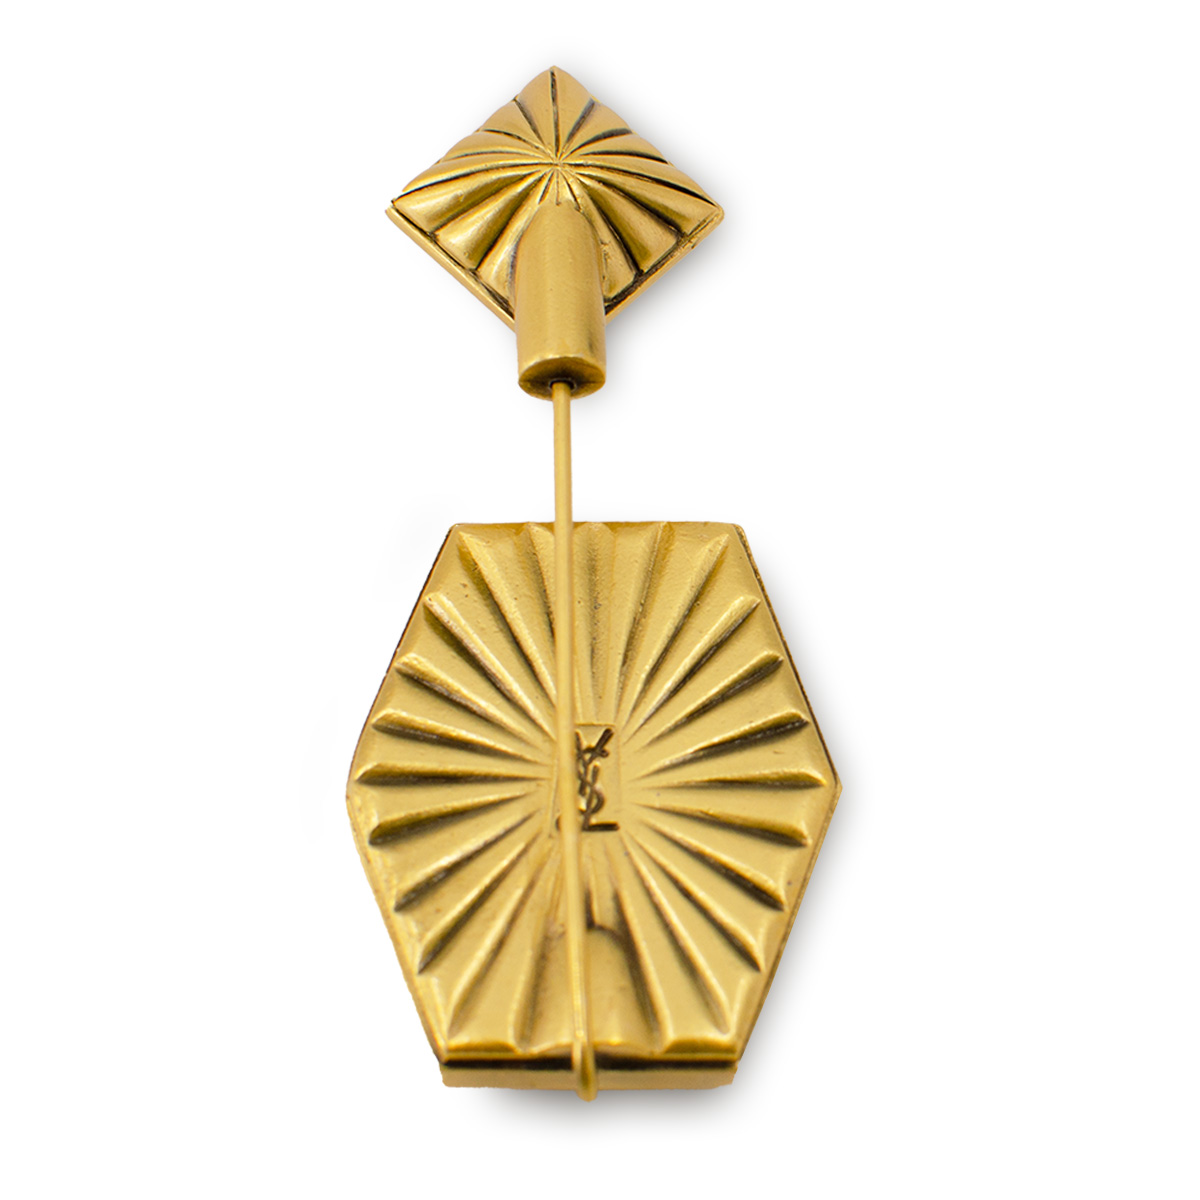 Yves Saint laurent jewelry